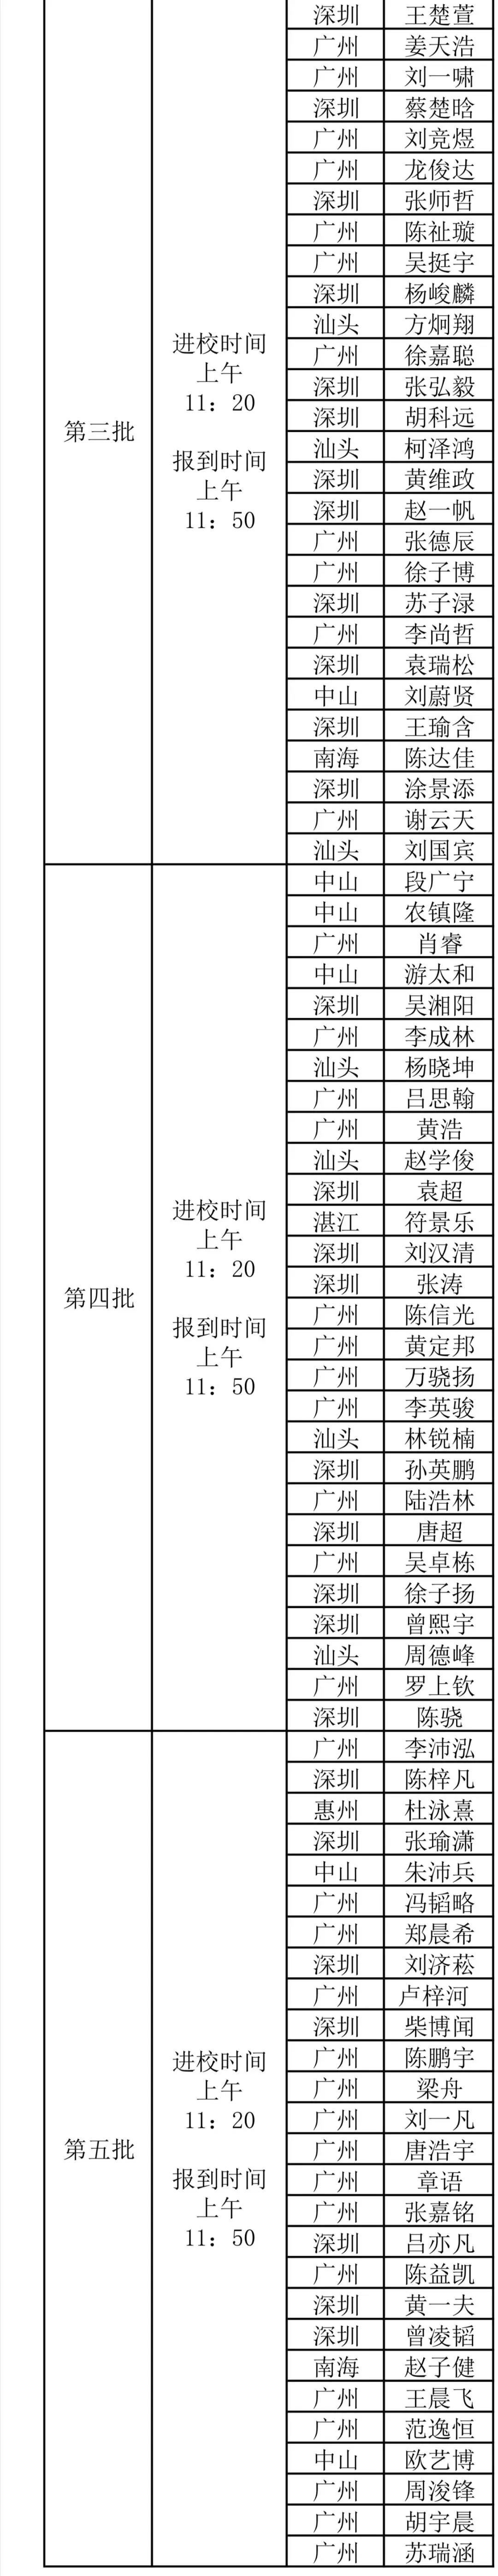 广东省2020年第37届全国中学生物理竞赛复赛实验参赛名单2